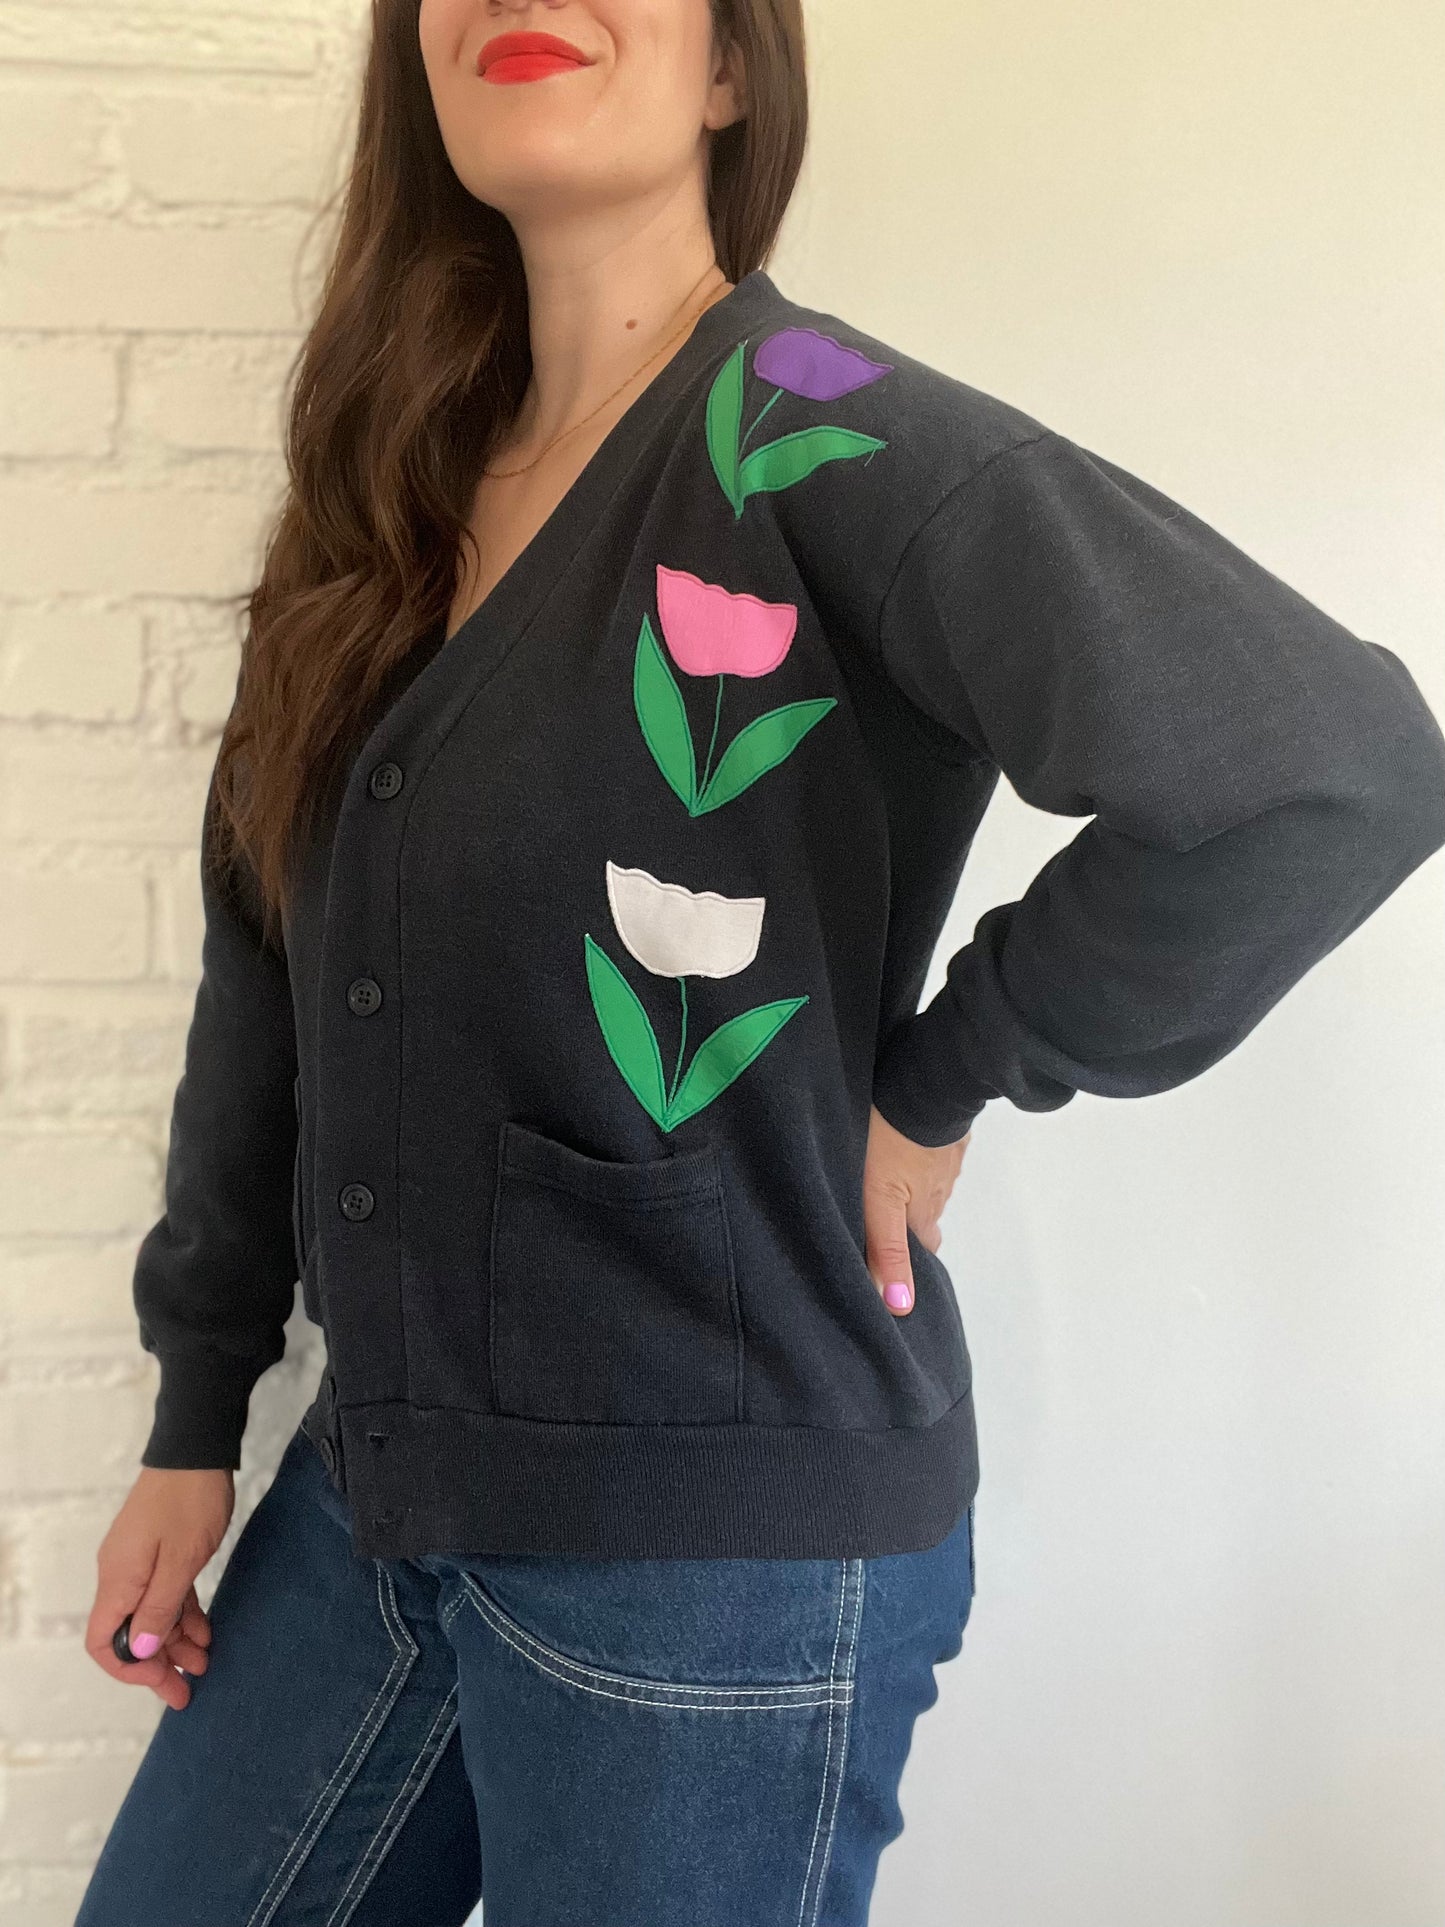 Vintage Floral Patch Sweater Cardigan - M/L